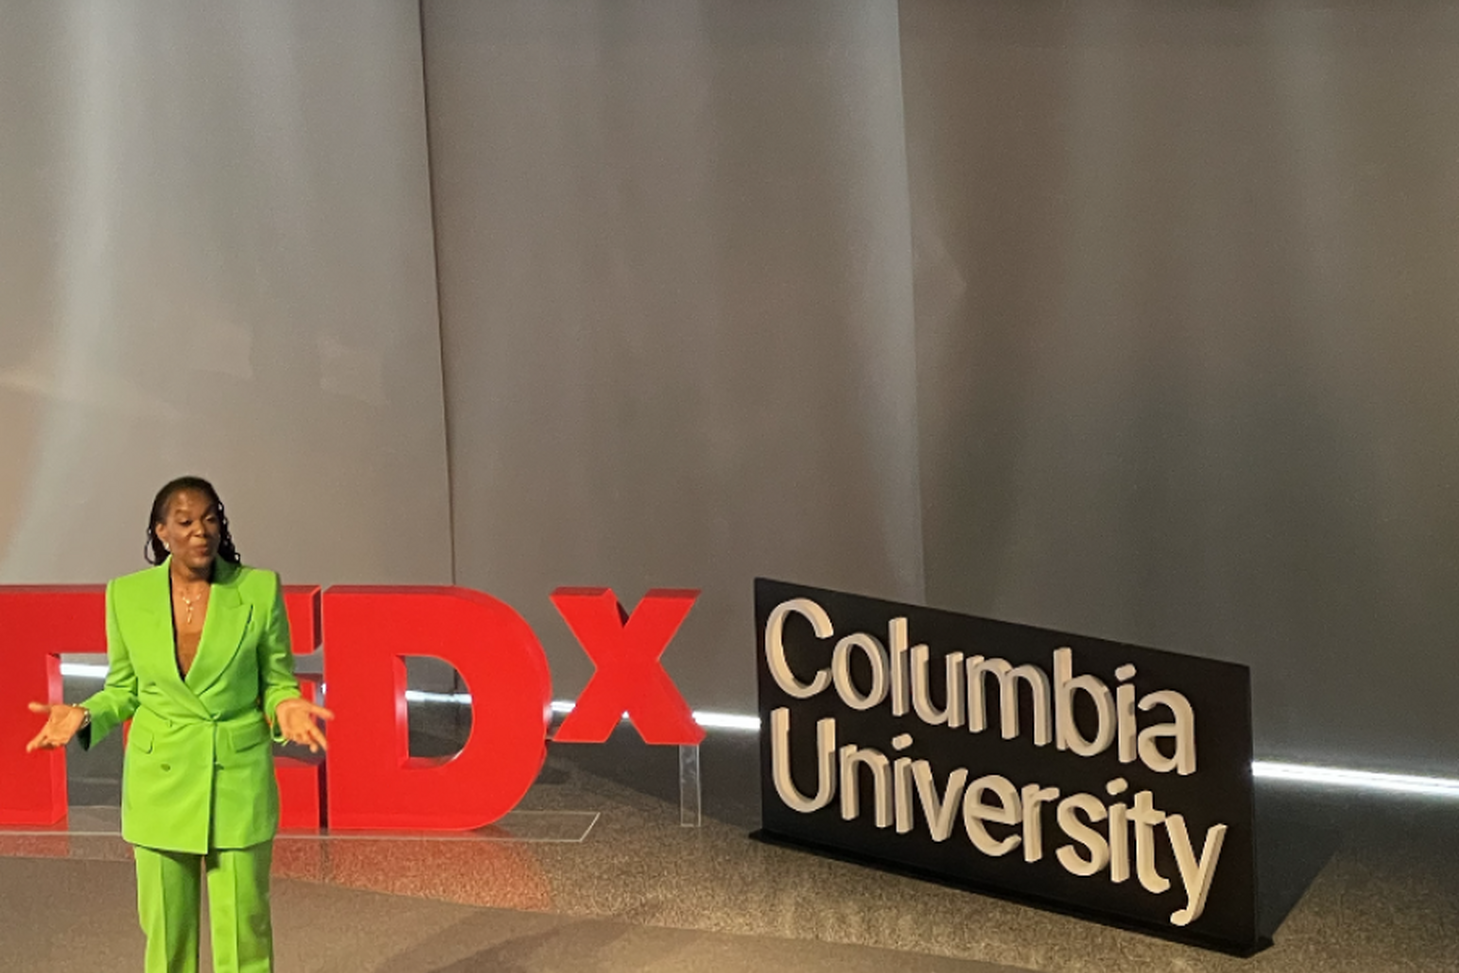 CBS Professor Valerie Purdie-Greenaway speaks at the TEDx event.